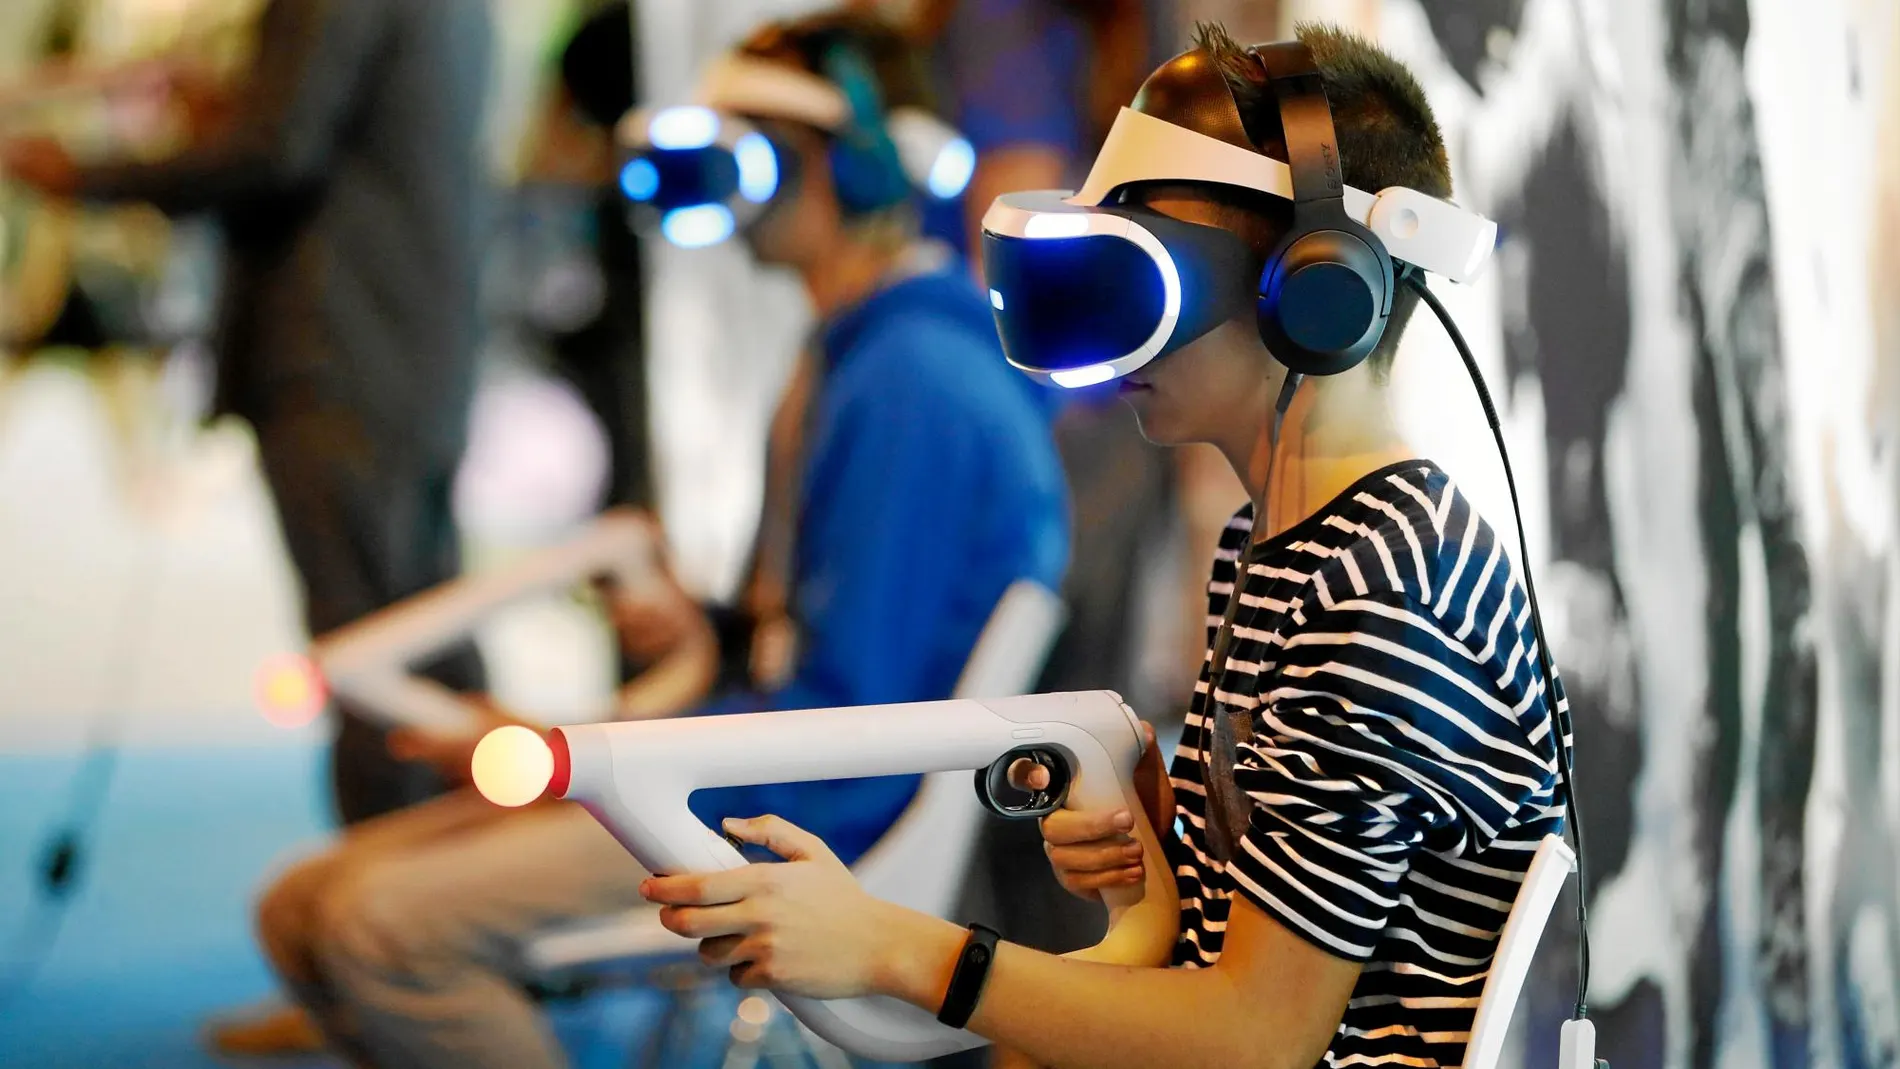 La realidad virtual ha sido un punto de inflexión para la industria de los videojuegos